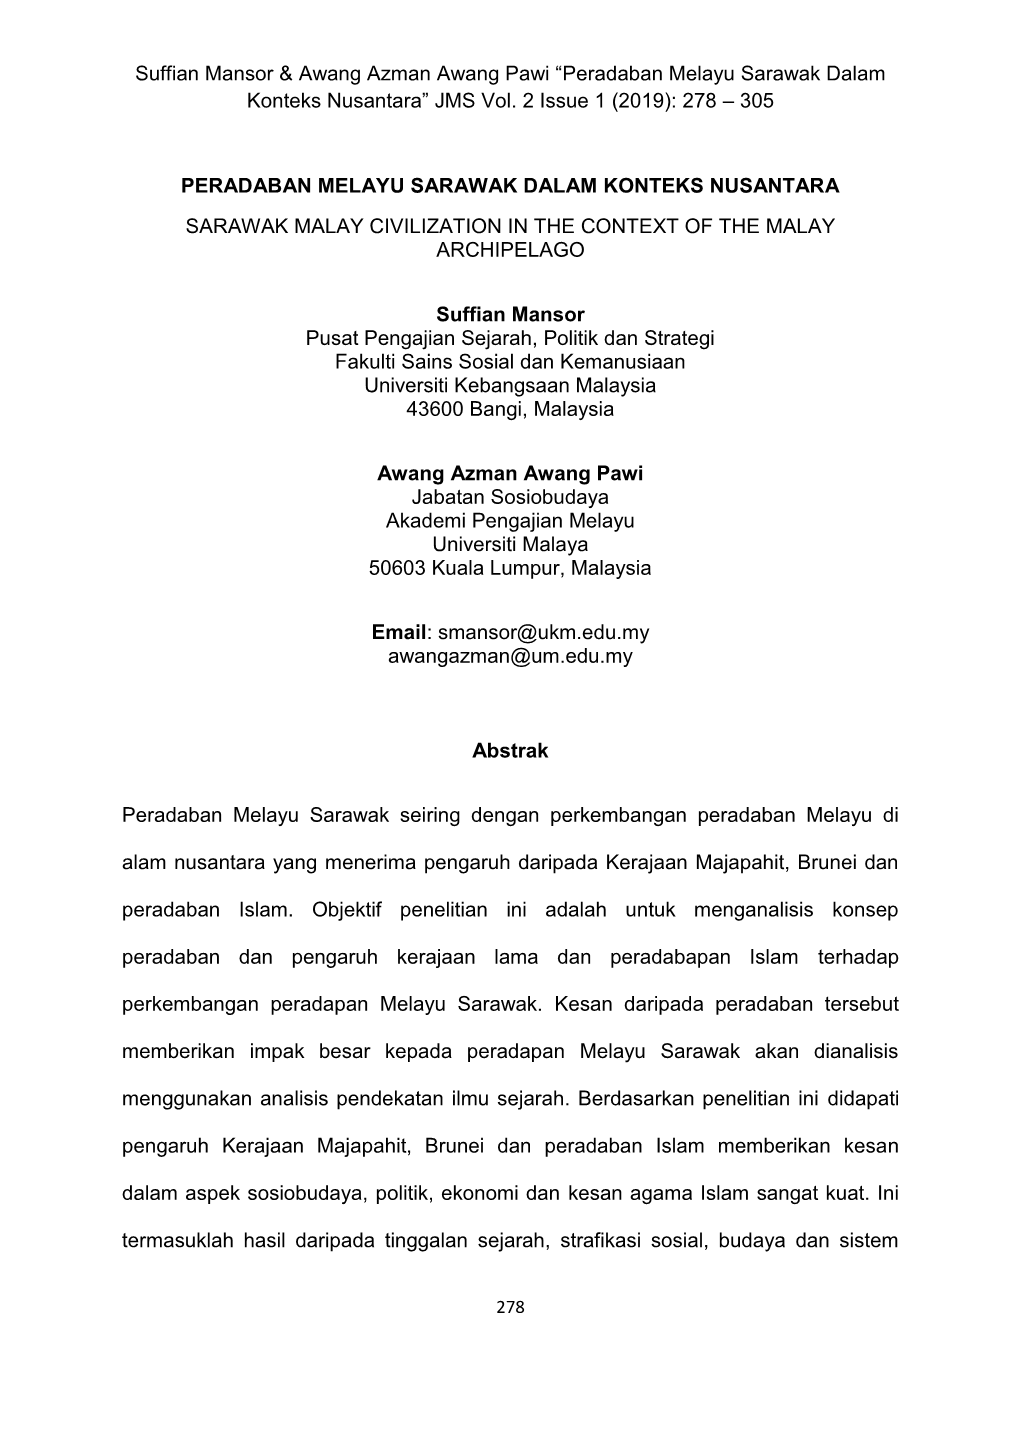 Peradaban Melayu Sarawak Dalam Konteks Nusantara” JMS Vol